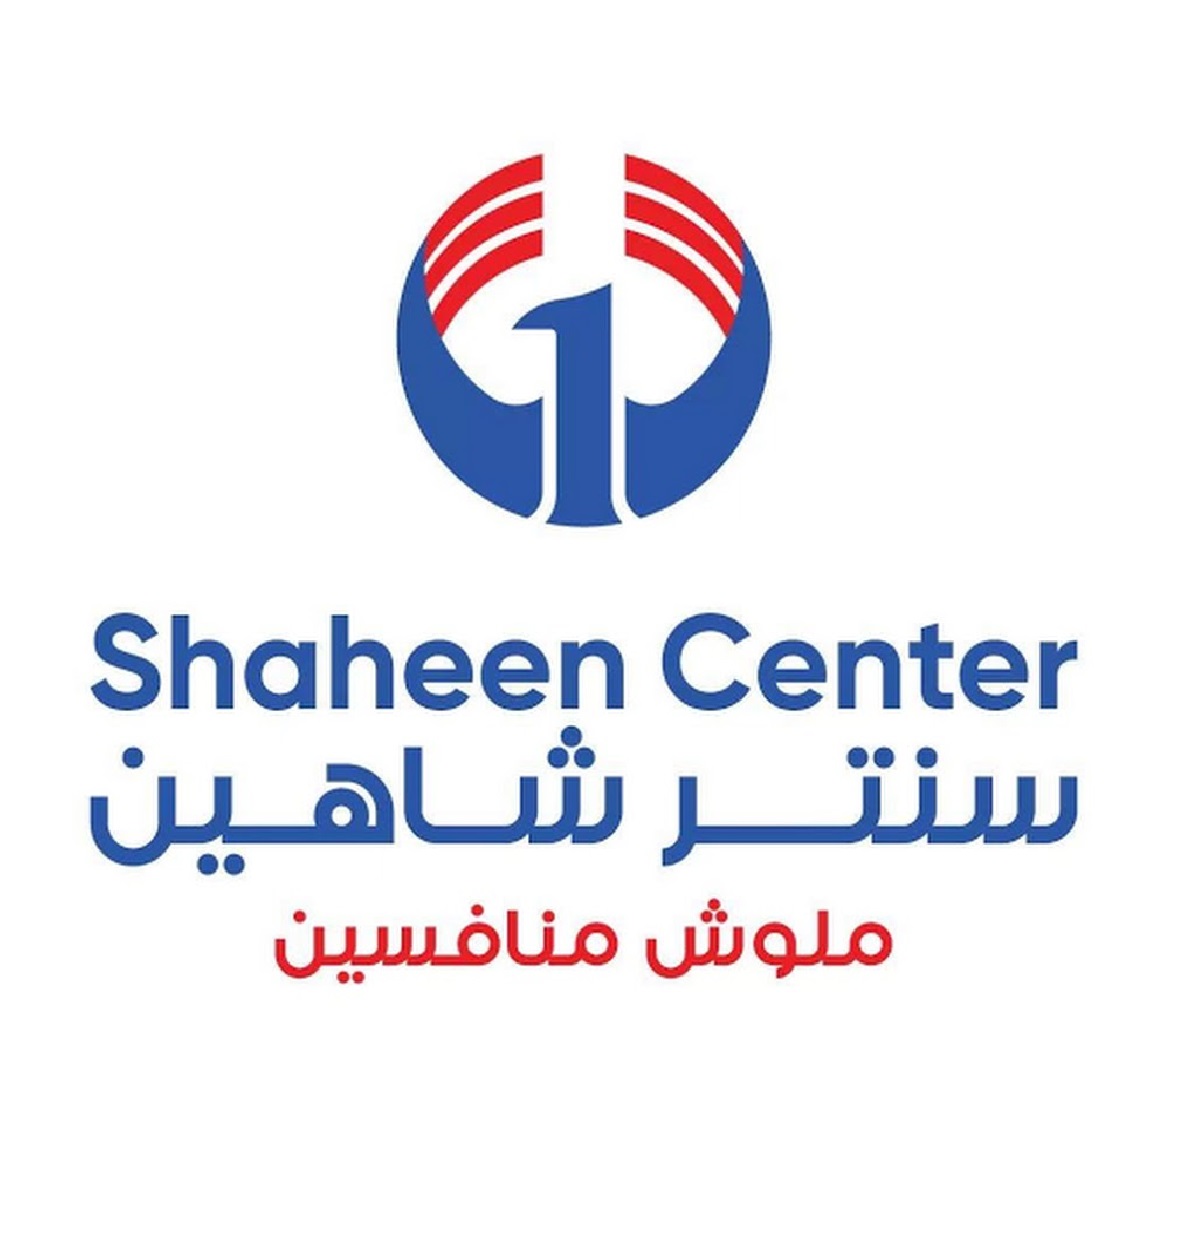 El-Shaheen Center